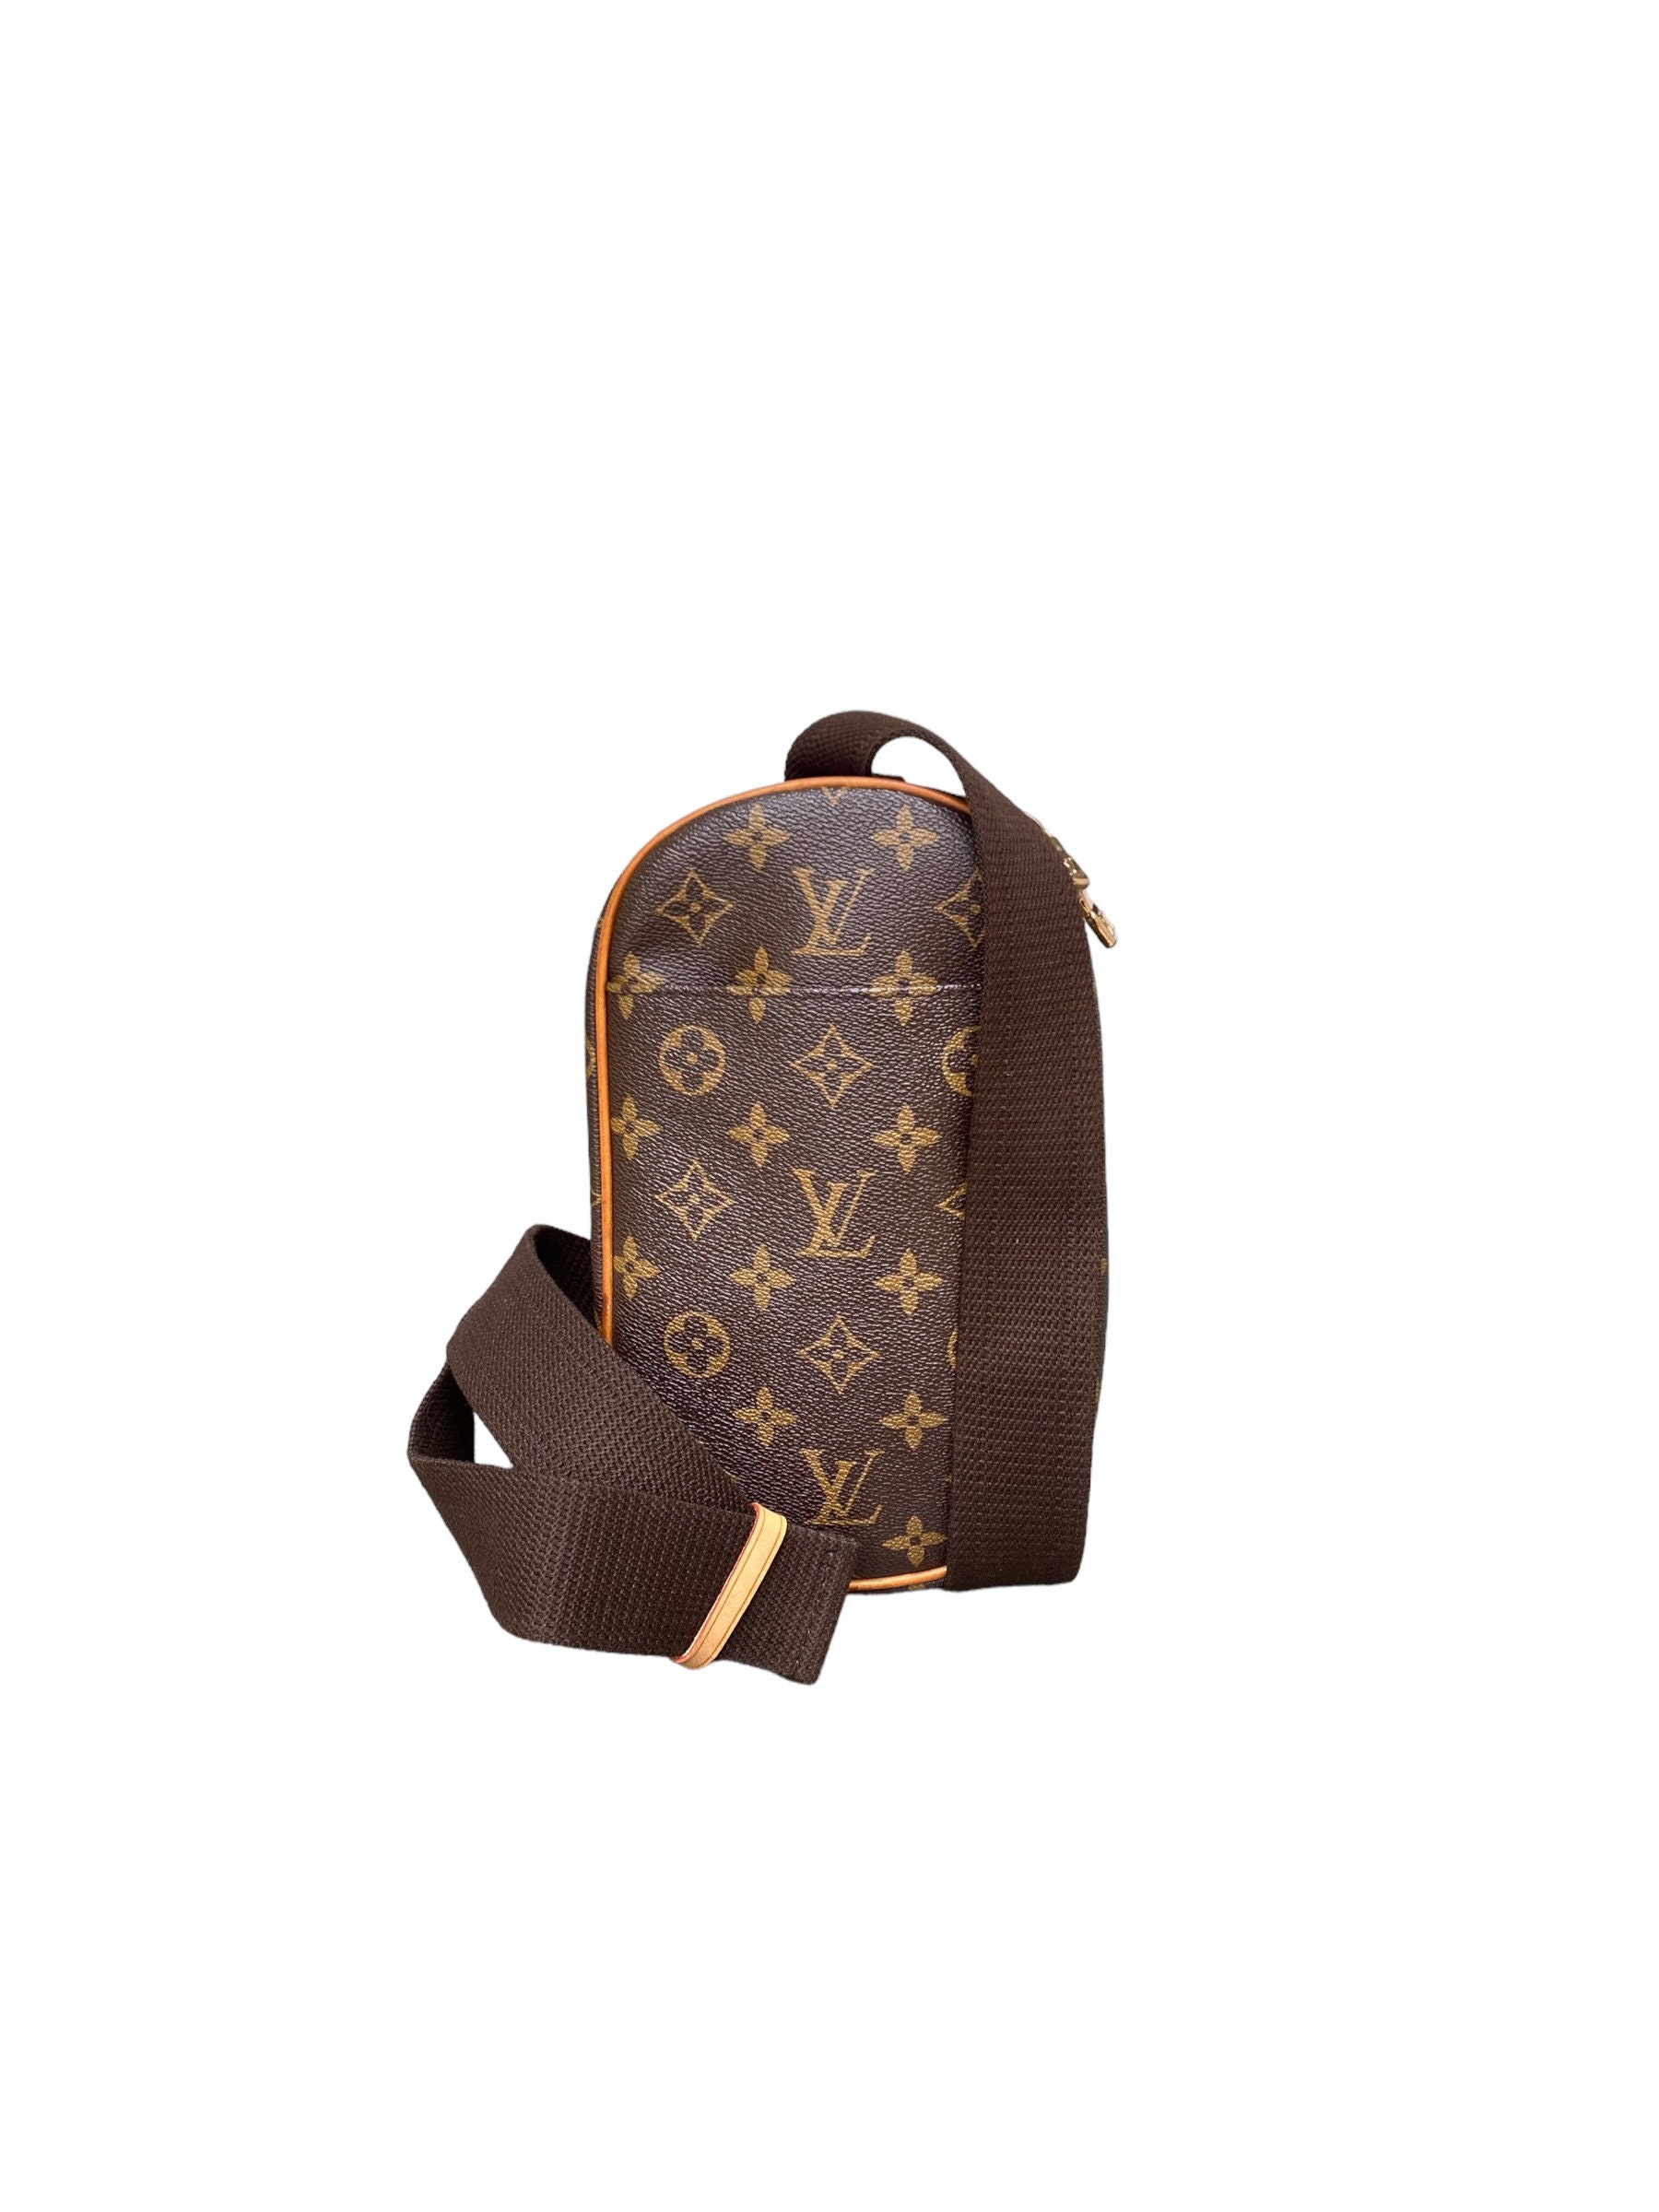 Authentic Louis Vuitton Monogram Pochette Gange Cross Body Bag